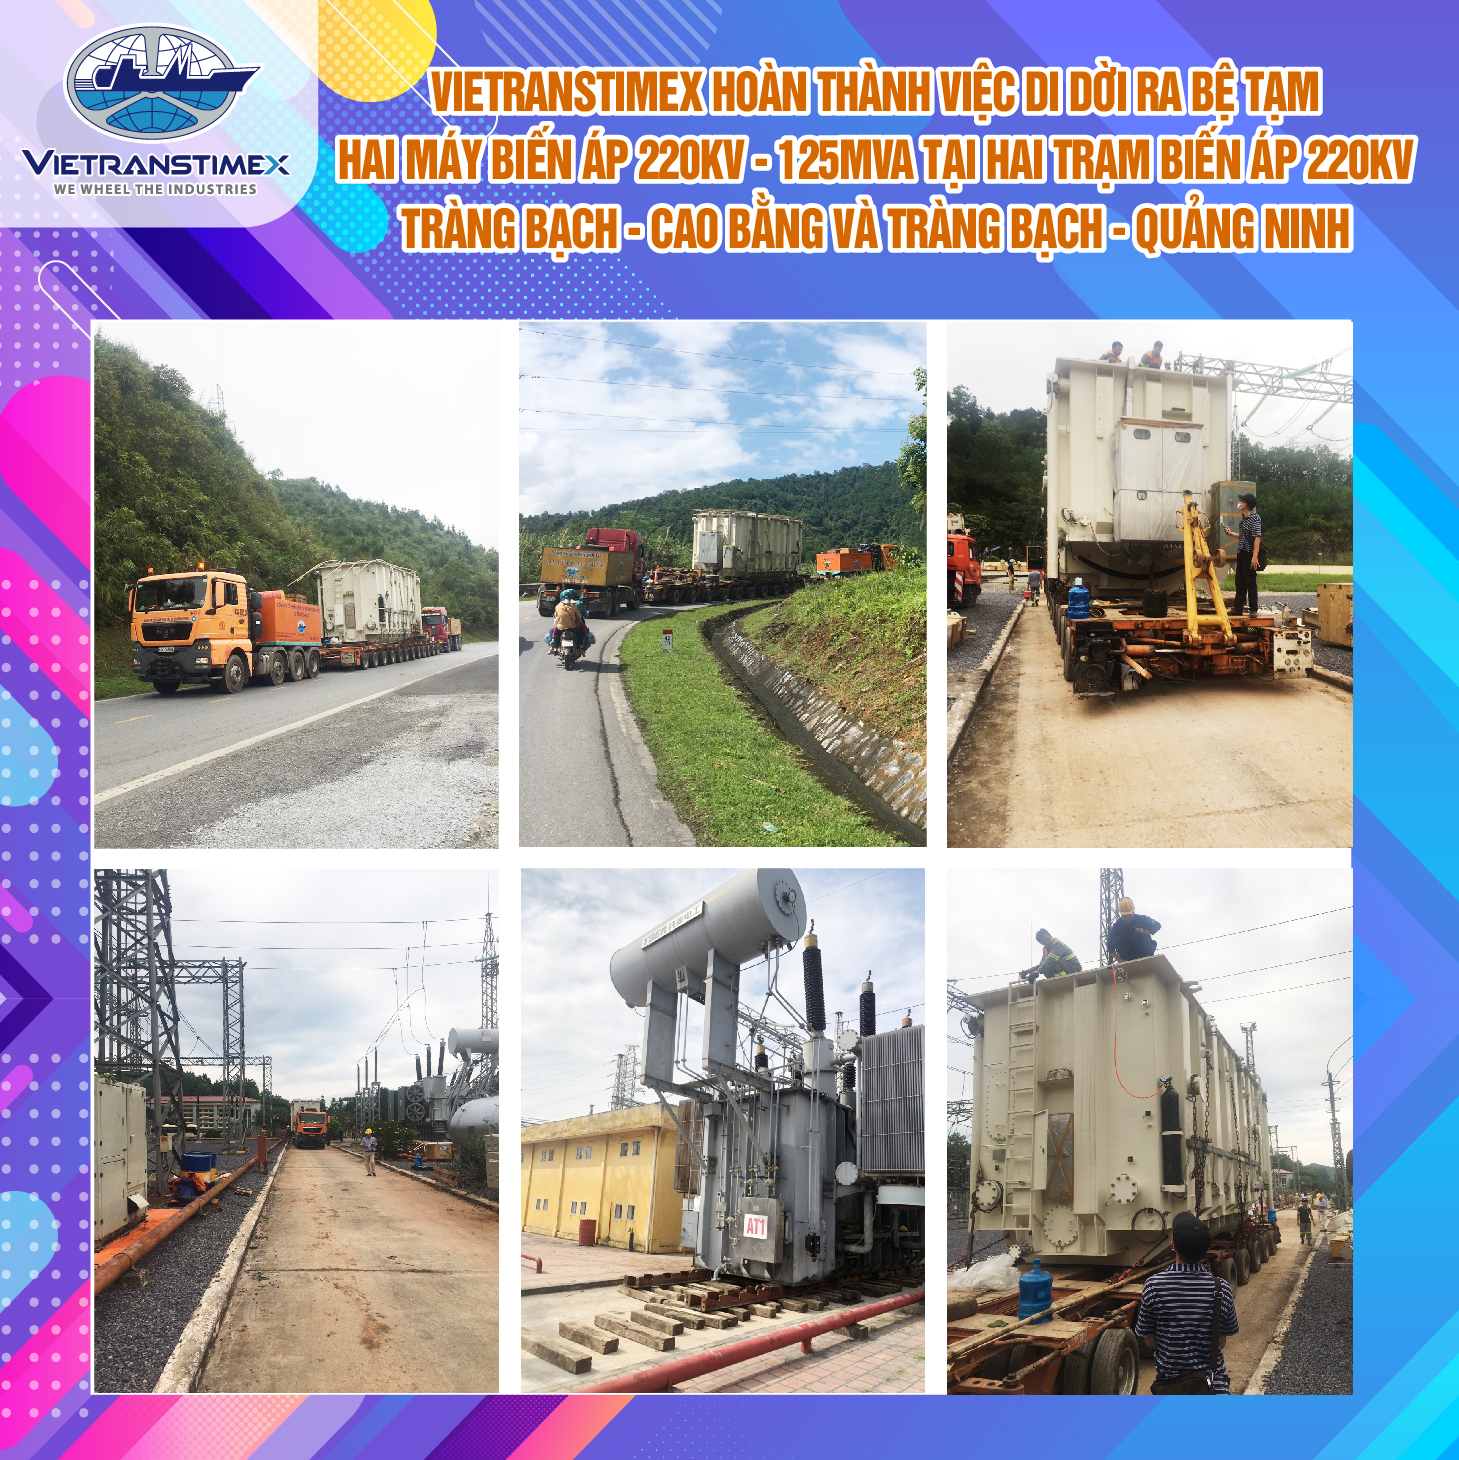 Vietranstimex Completed Site Moving To Temporary Platform Of The Two 220kV - 125MVA Transformers At Trang Bach – Cao Bang 220kV Substation And Trang Bach – Quang Ninh 220kV Substation